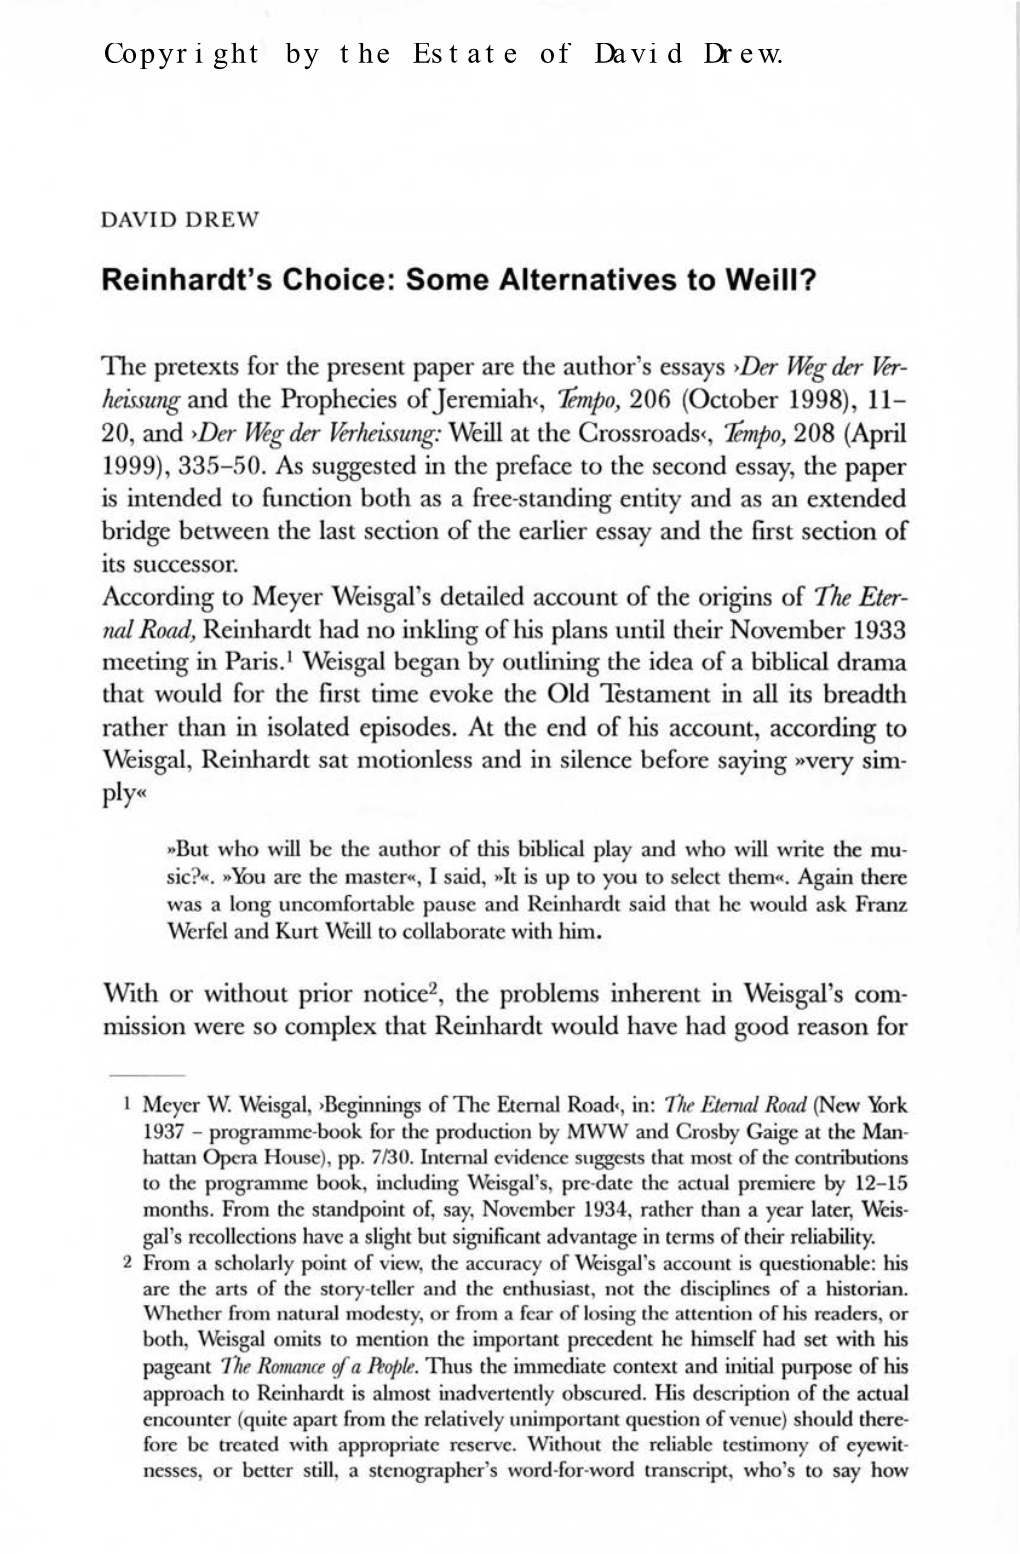 Reinhardt's Choice: Some Alternatives to Weill?